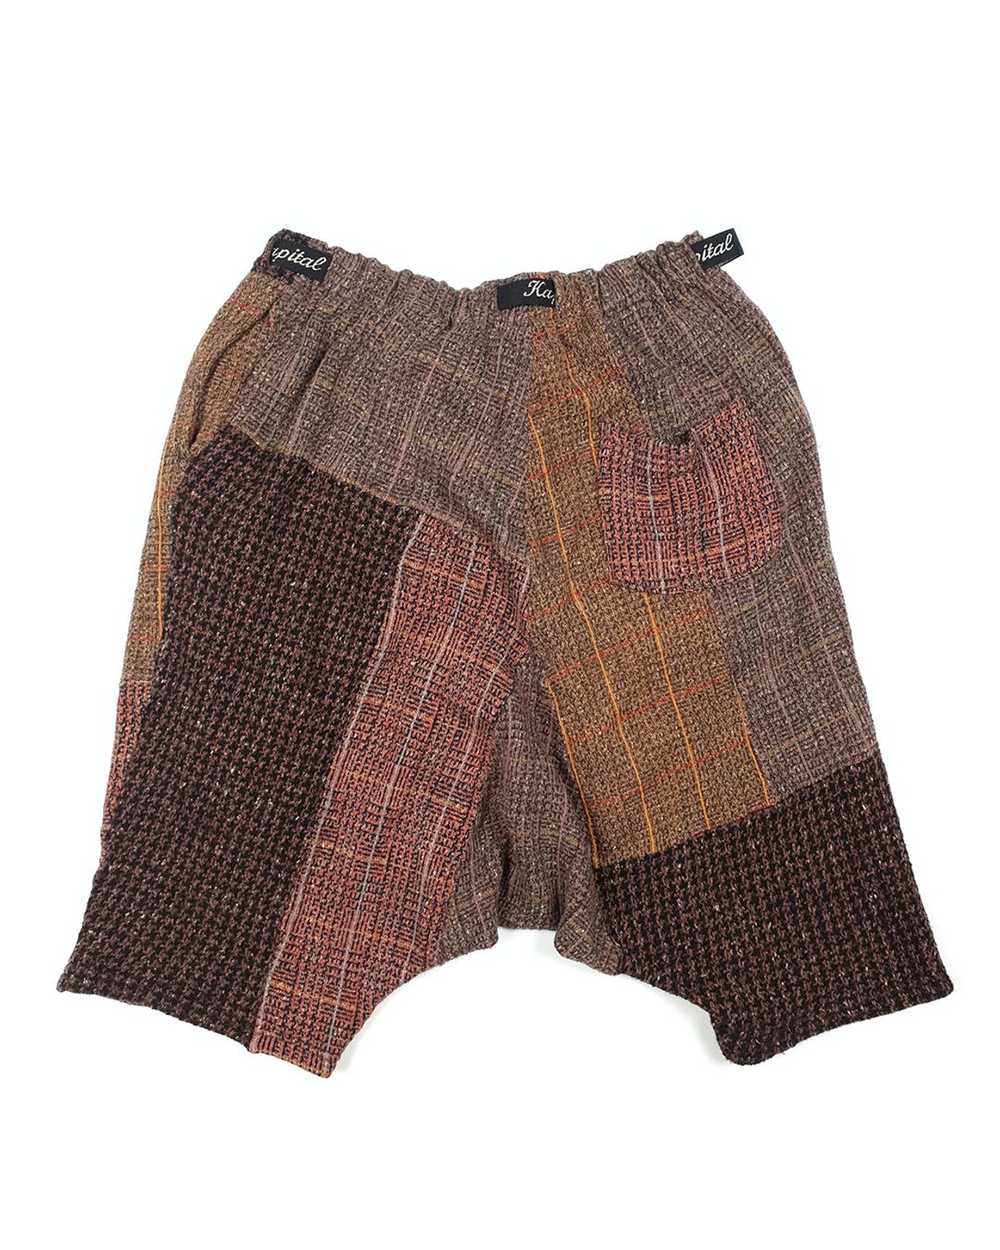 Kapital Reconstructed Wool Shorts - image 2